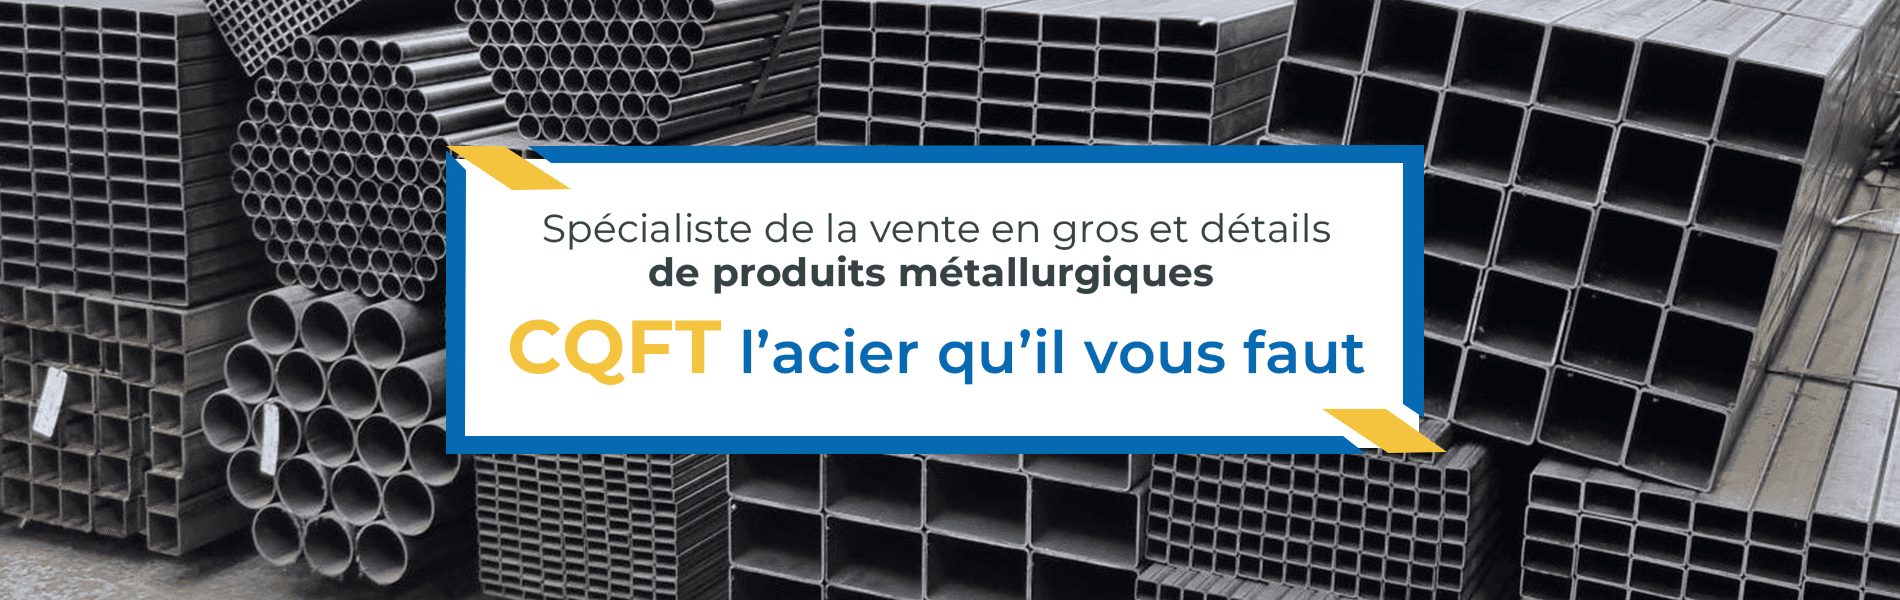 Spécialiste de la vente en gros et détails de produits métallurgiques CQFT, l'acier qu'il vous faut